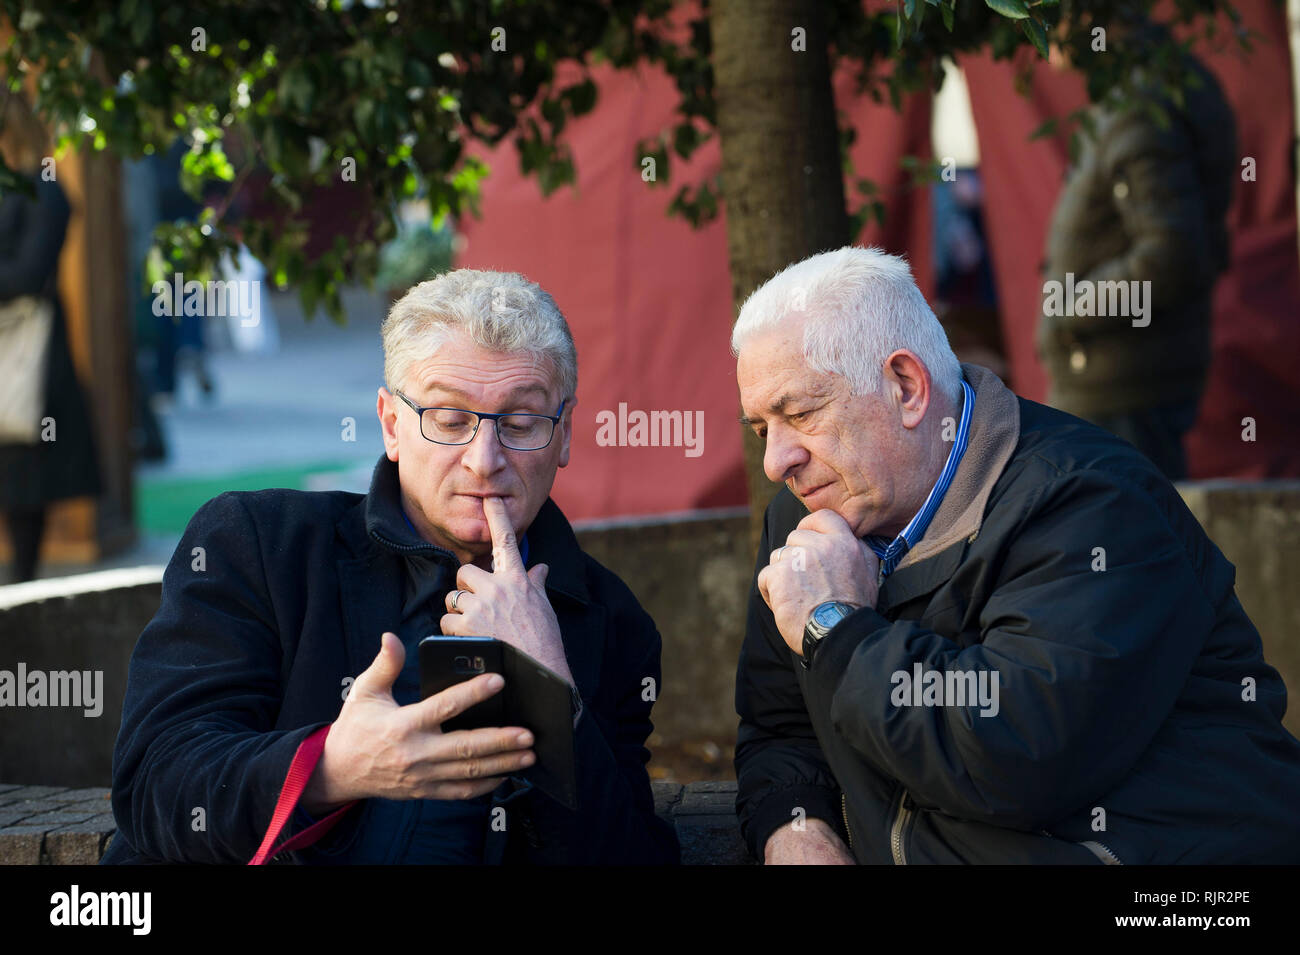 Italia, Lombardía, Monza, los ancianos en el banquillo estudiar cómo funciona un teléfono móvil Foto de stock